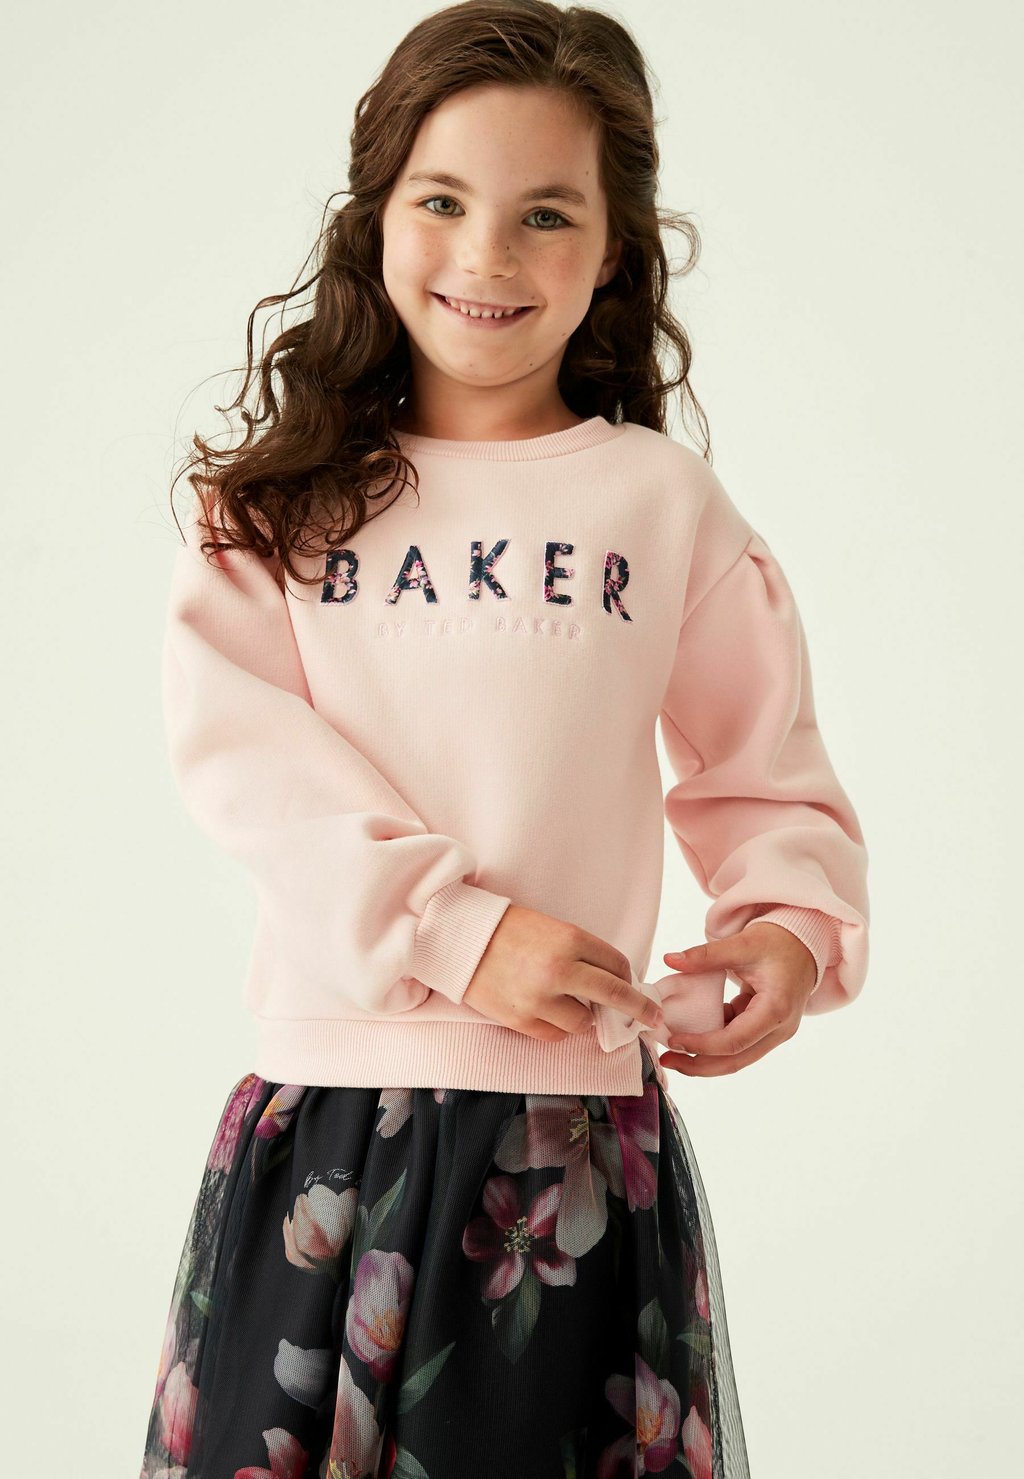 Летнее платье Baker by Ted Baker, розовое